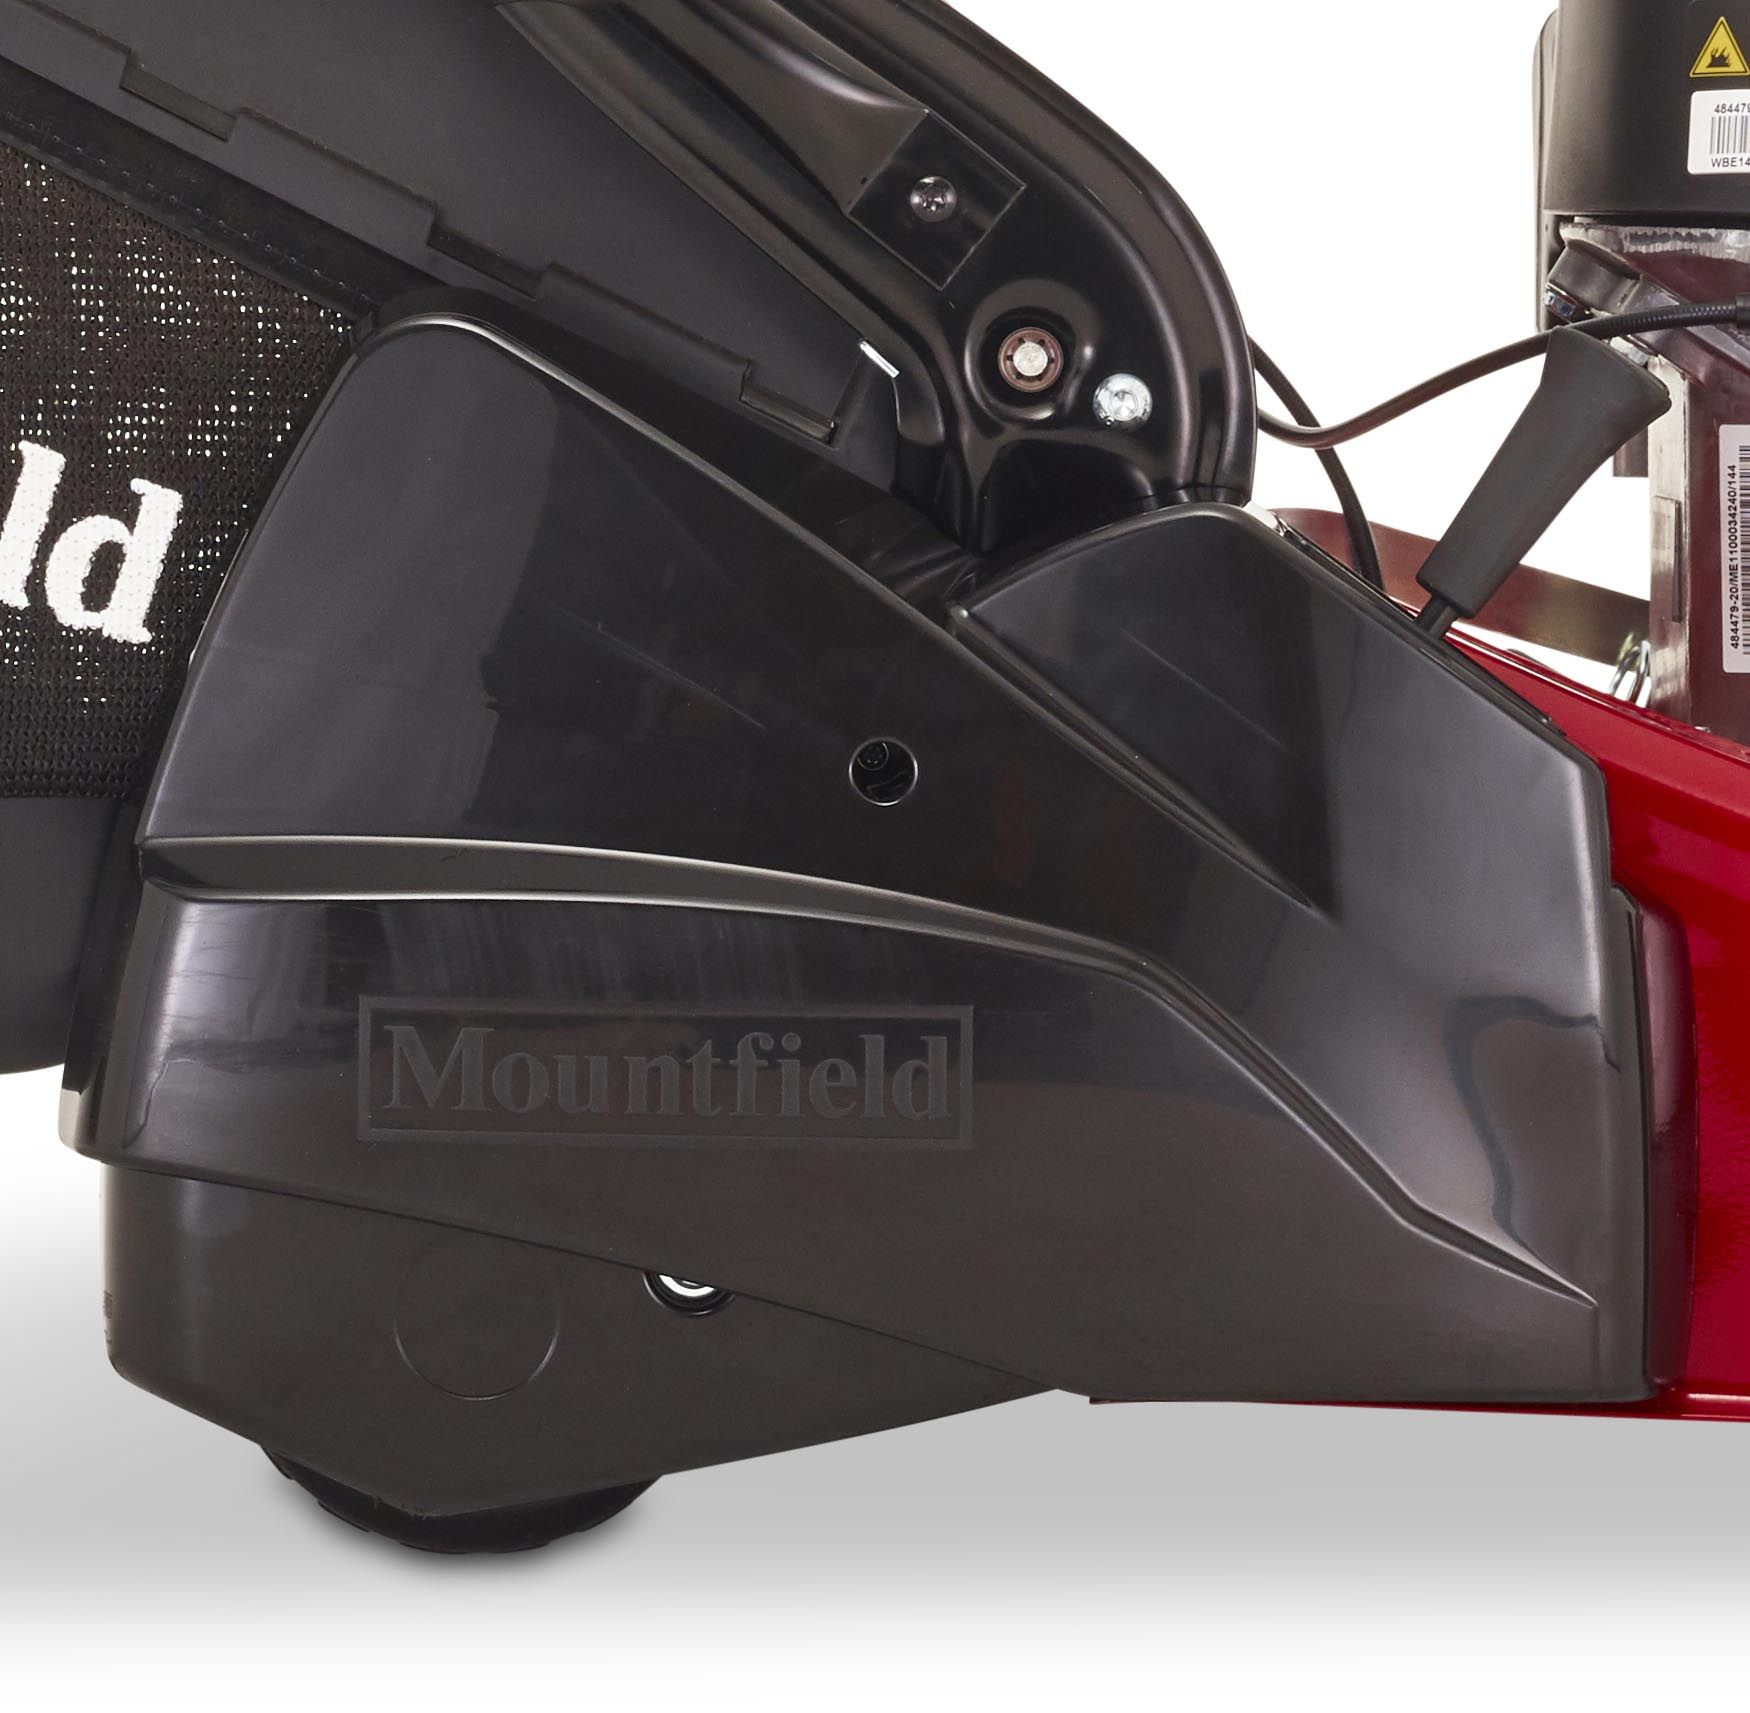 Mountfield S421RPD Self Propelled Roller Petrol Lawn Mower 41cm